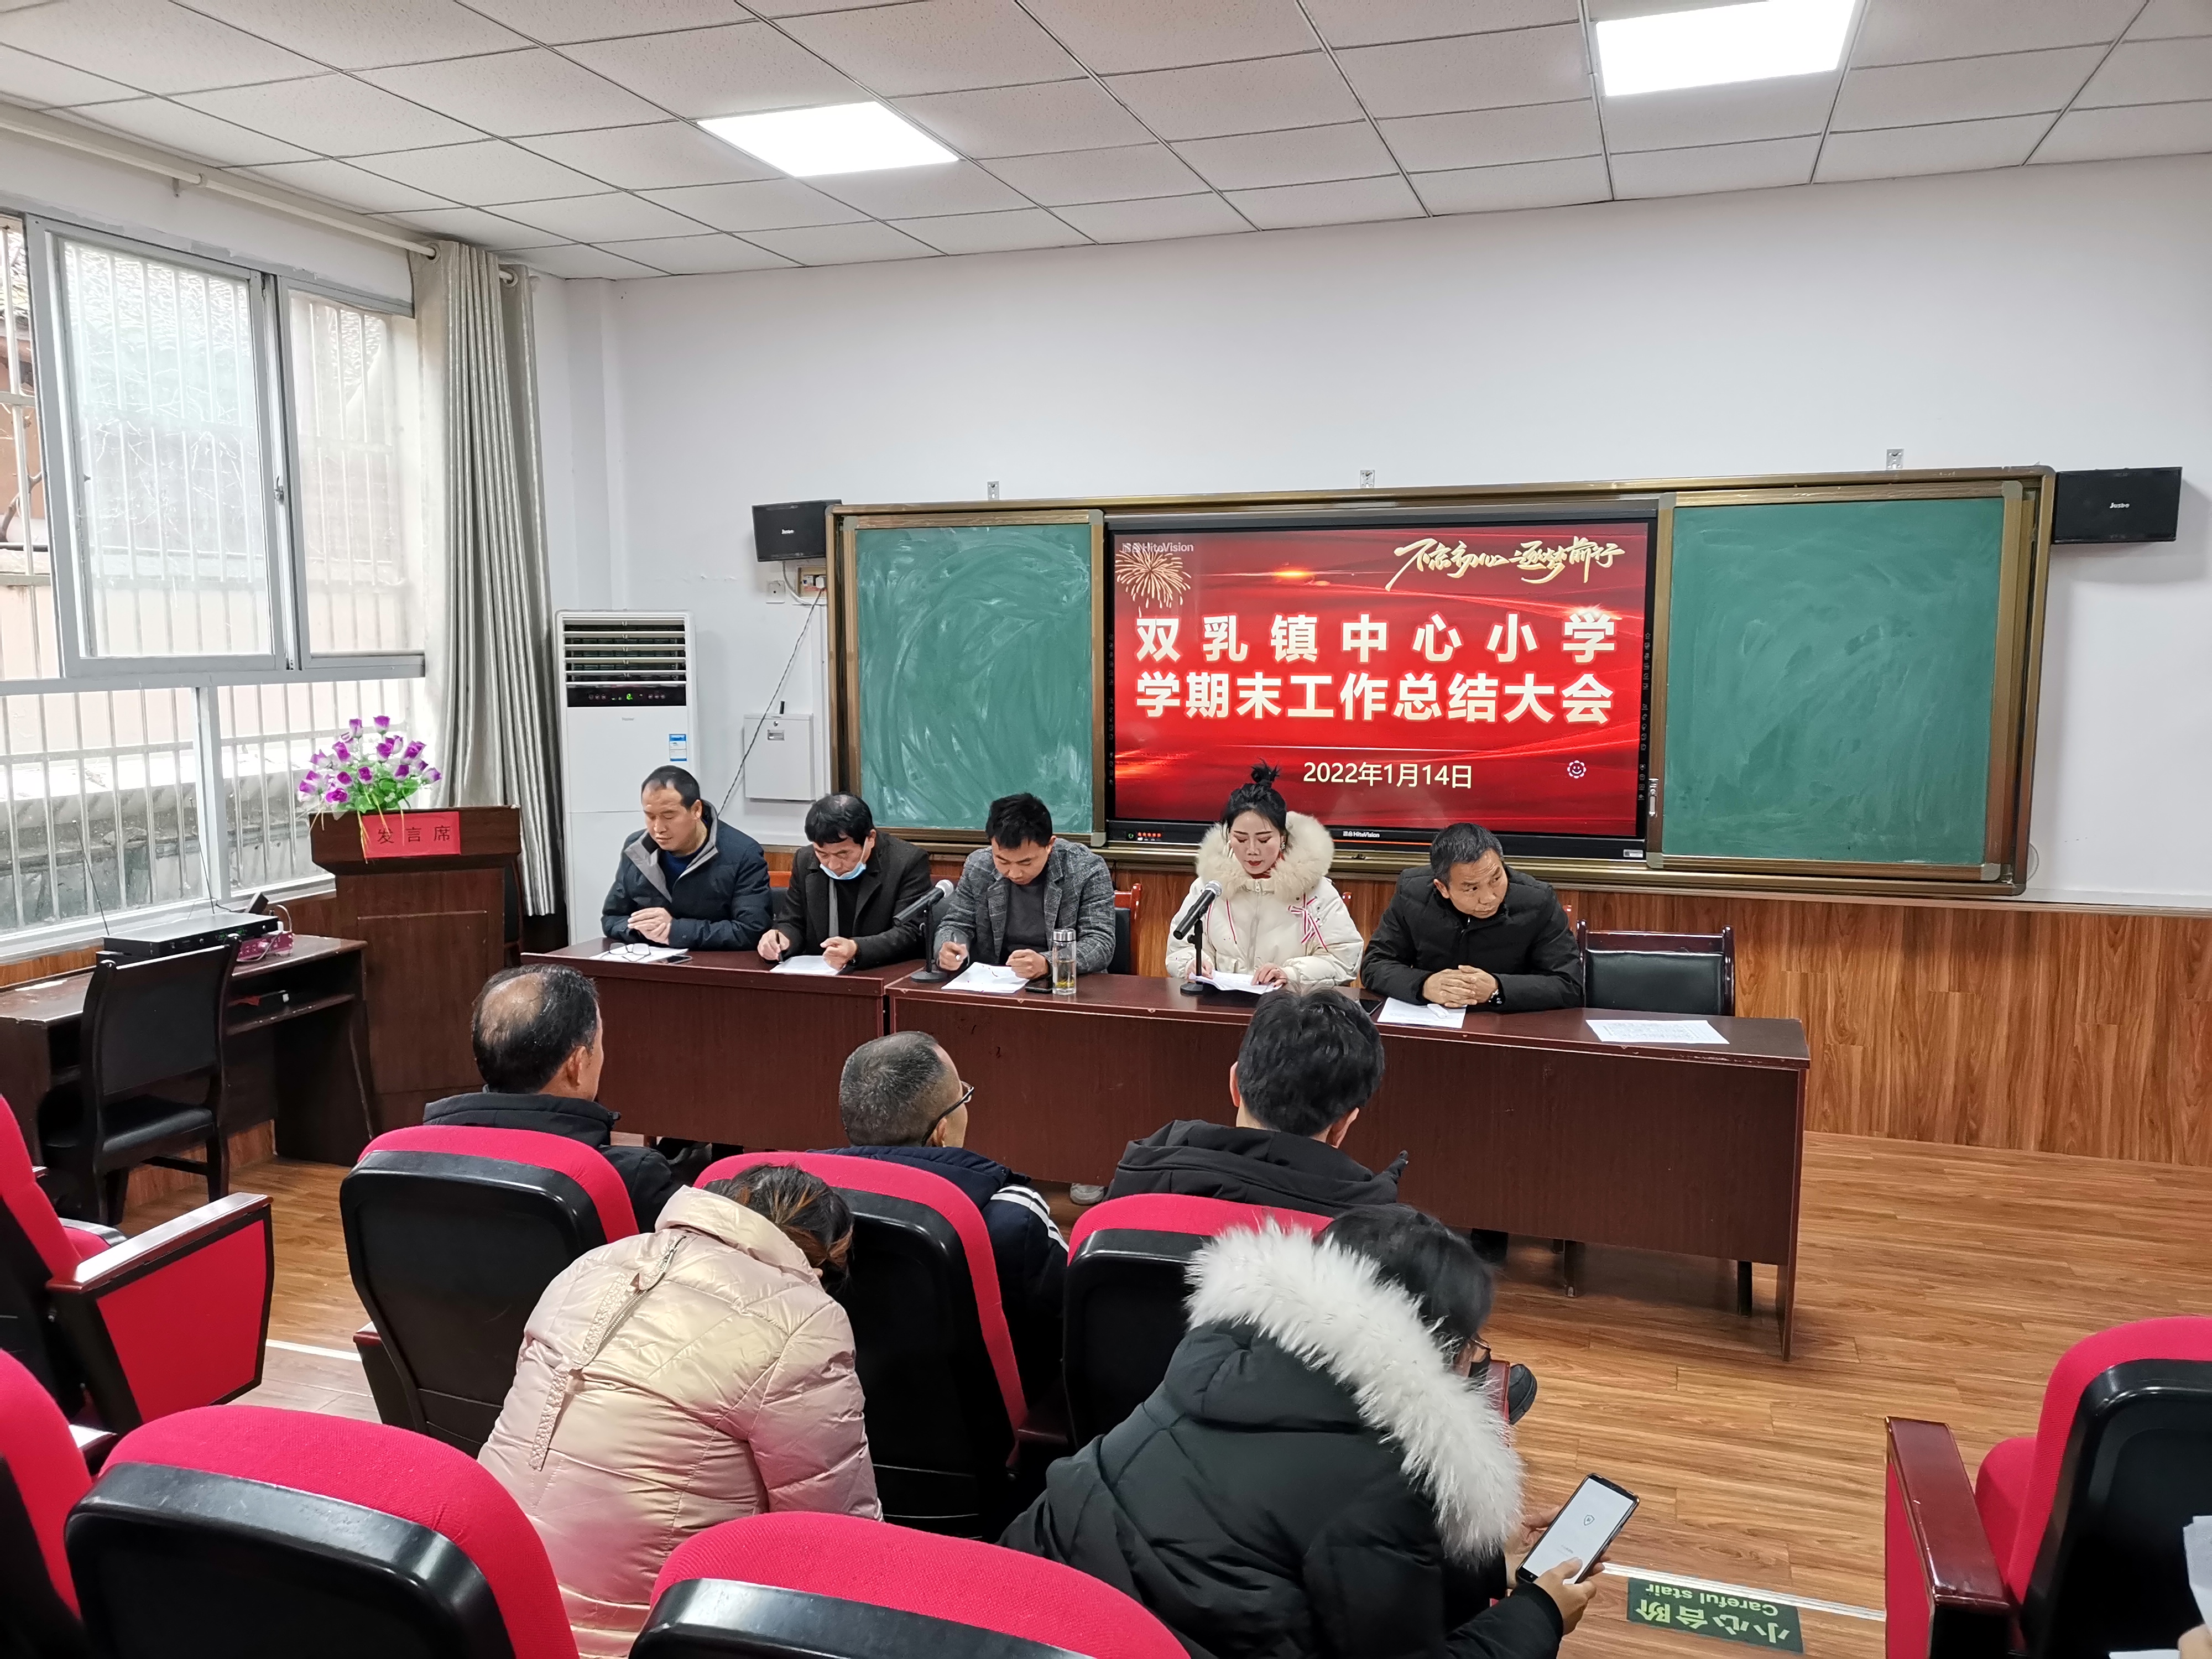 汉阴县双乳镇中心小学举行期末总结会